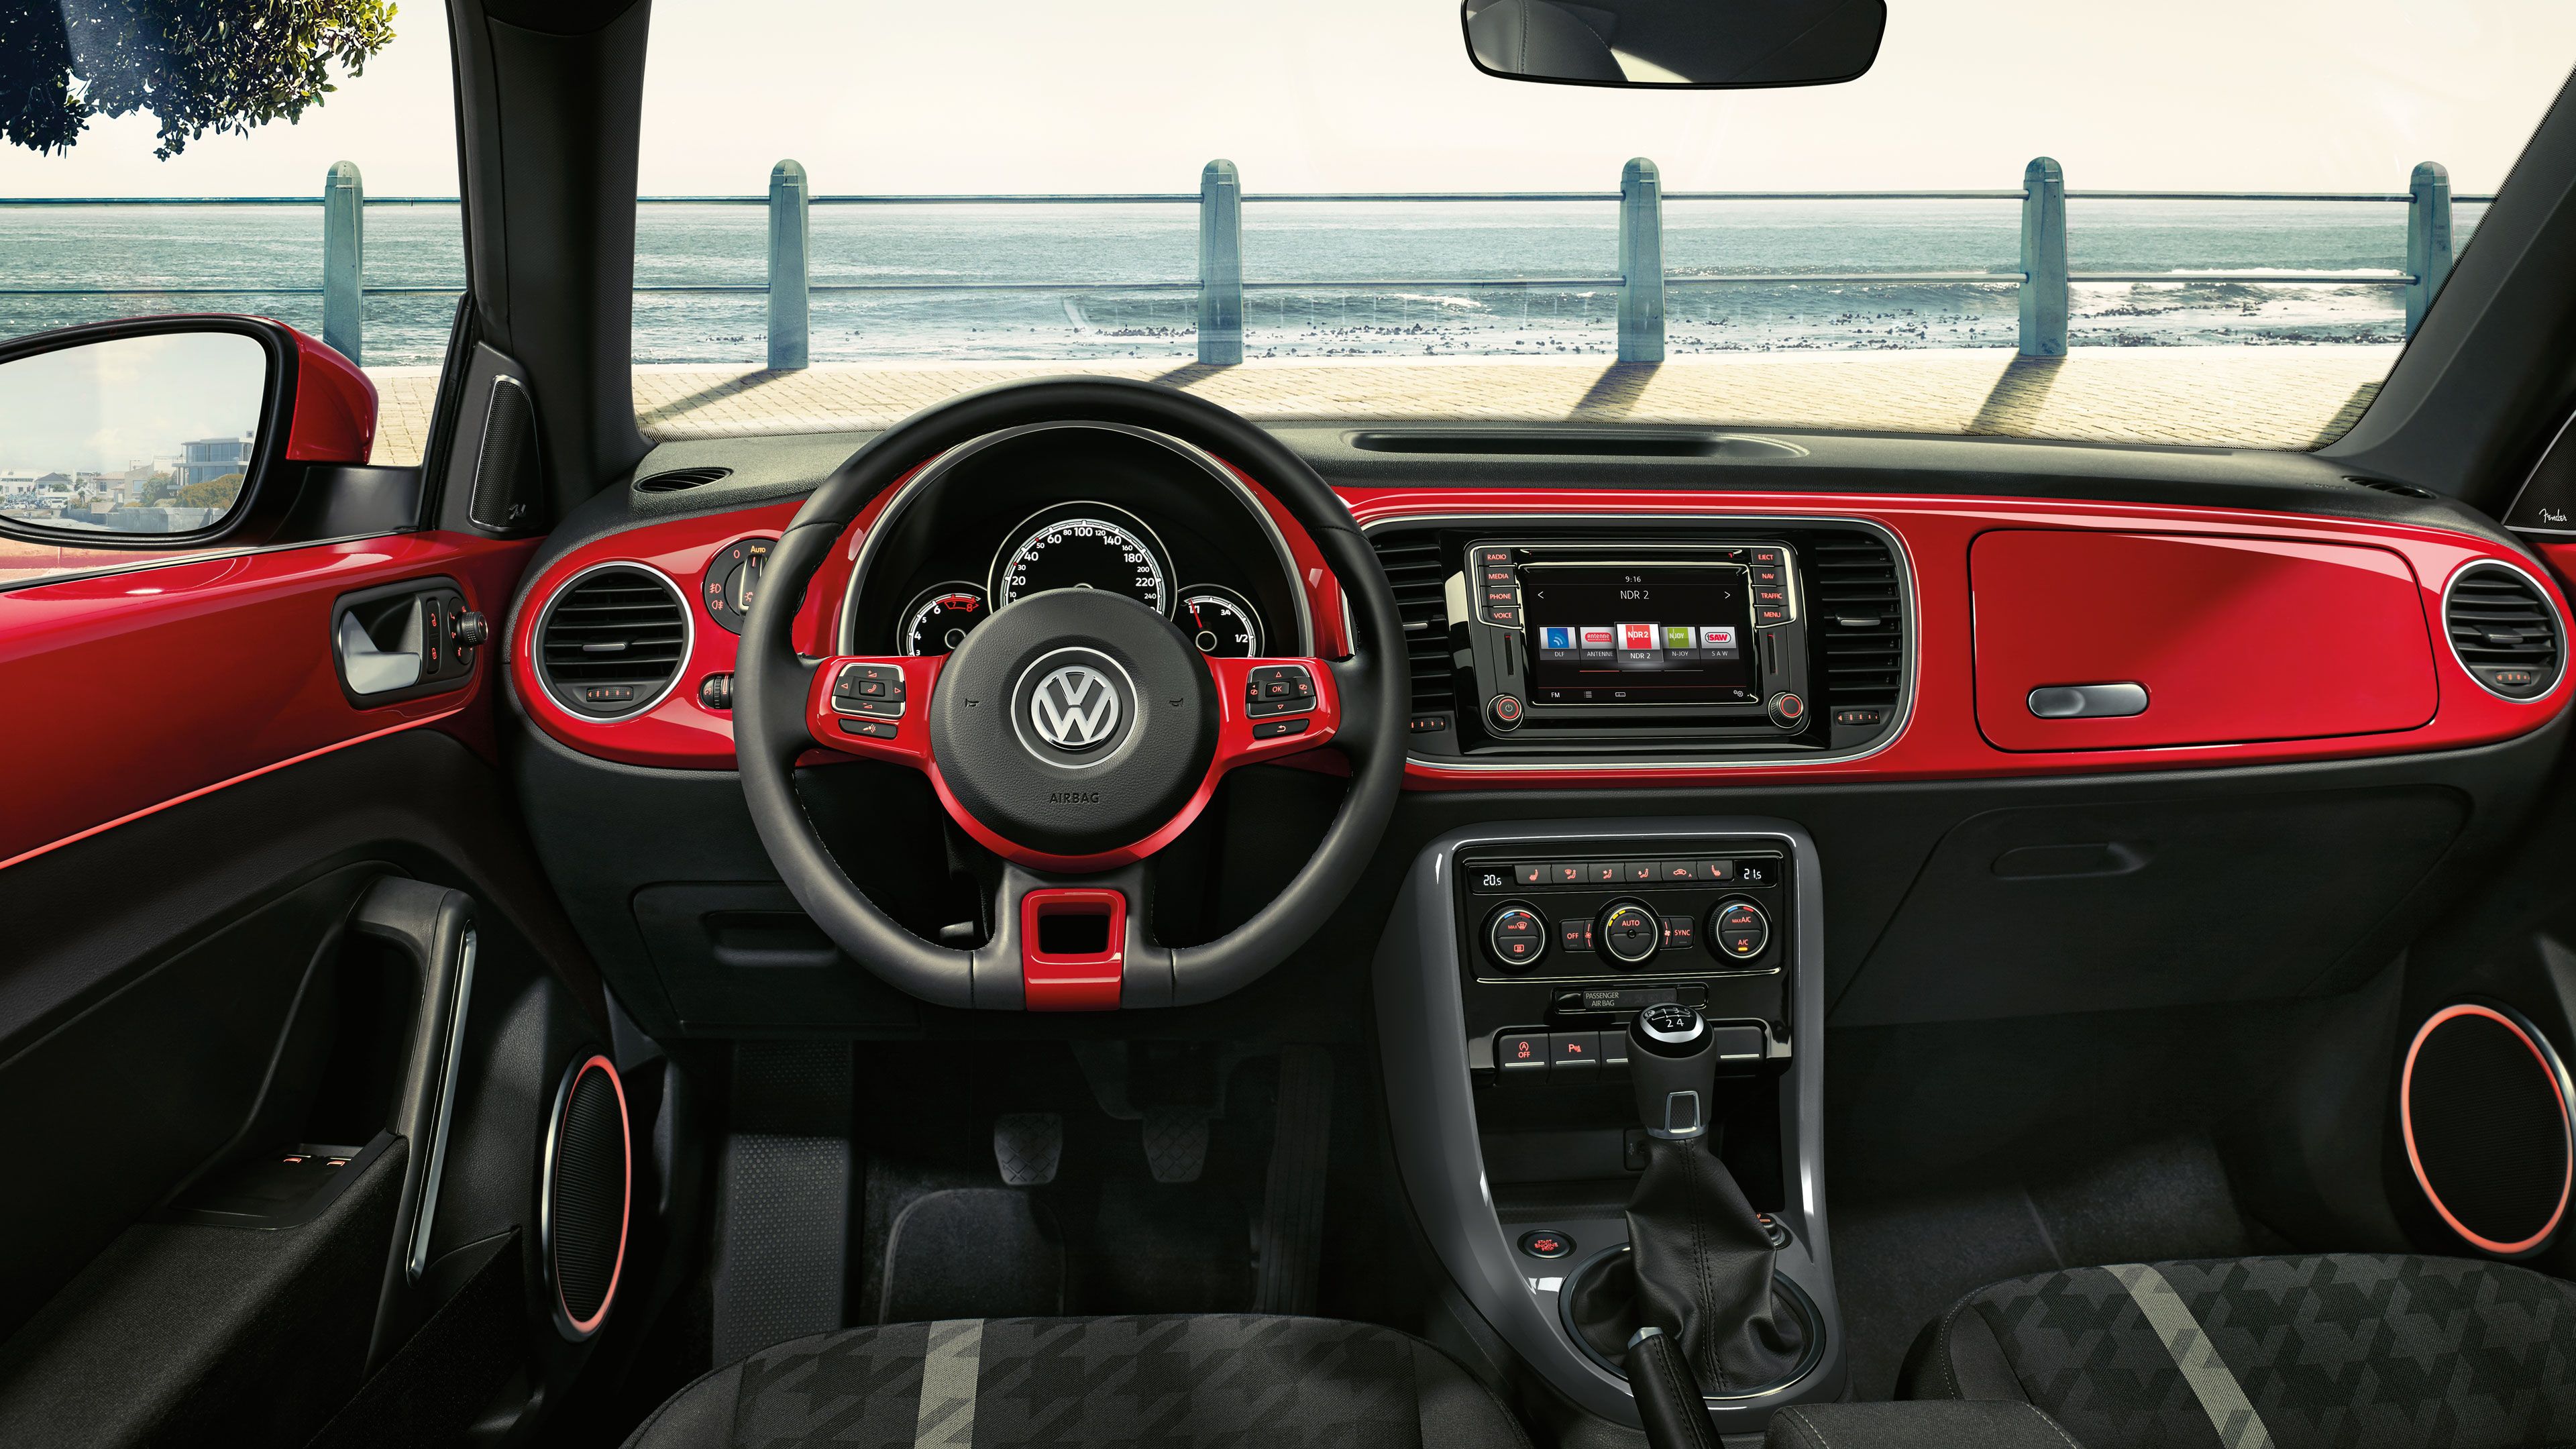 VW Beetle Interieur und Cockpit rot und schwarz